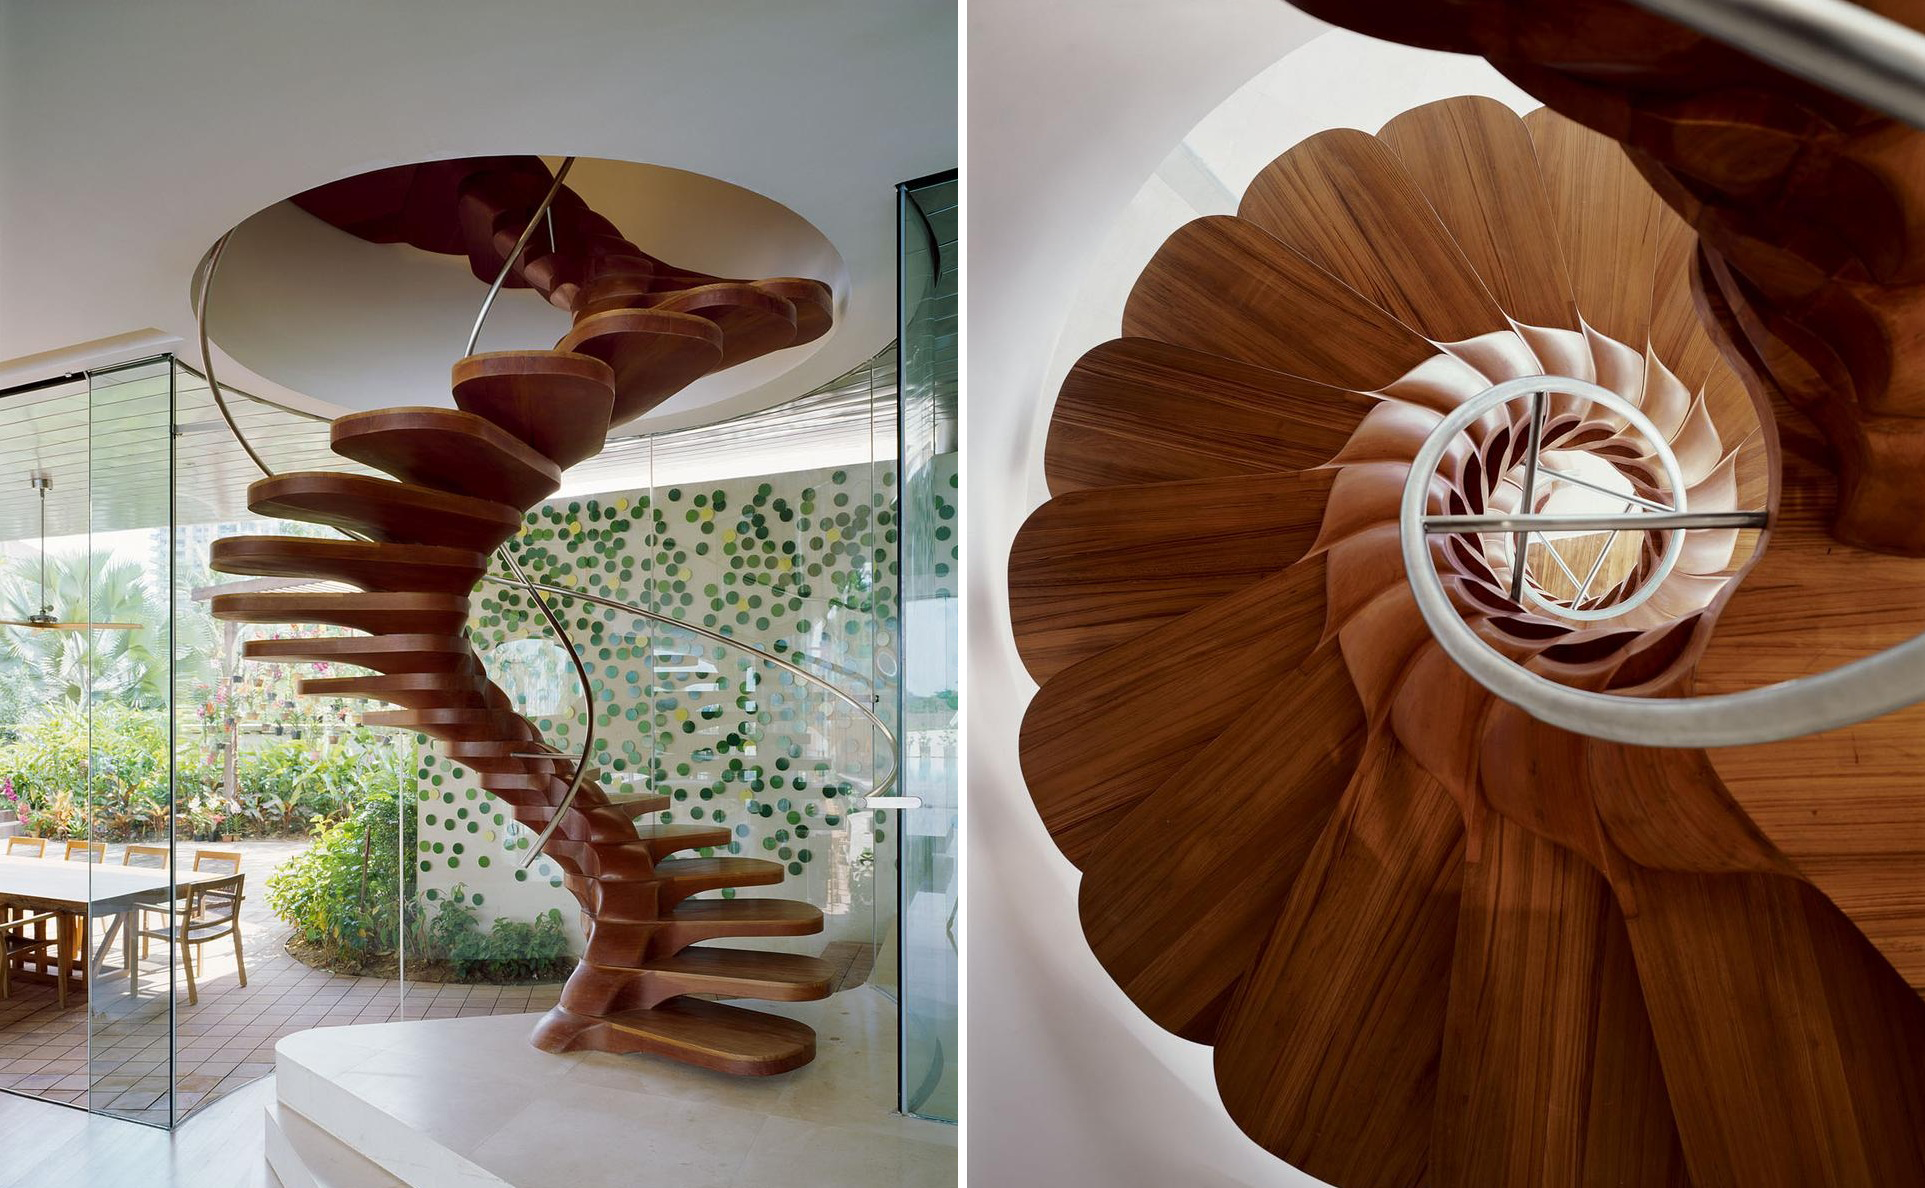 Природные формы дерева. Винтовая лестница Эндрю Макконнелла. Лестница винтовая деревянная. Необычные деревянные лестницы. Необычные элементы интерьера.